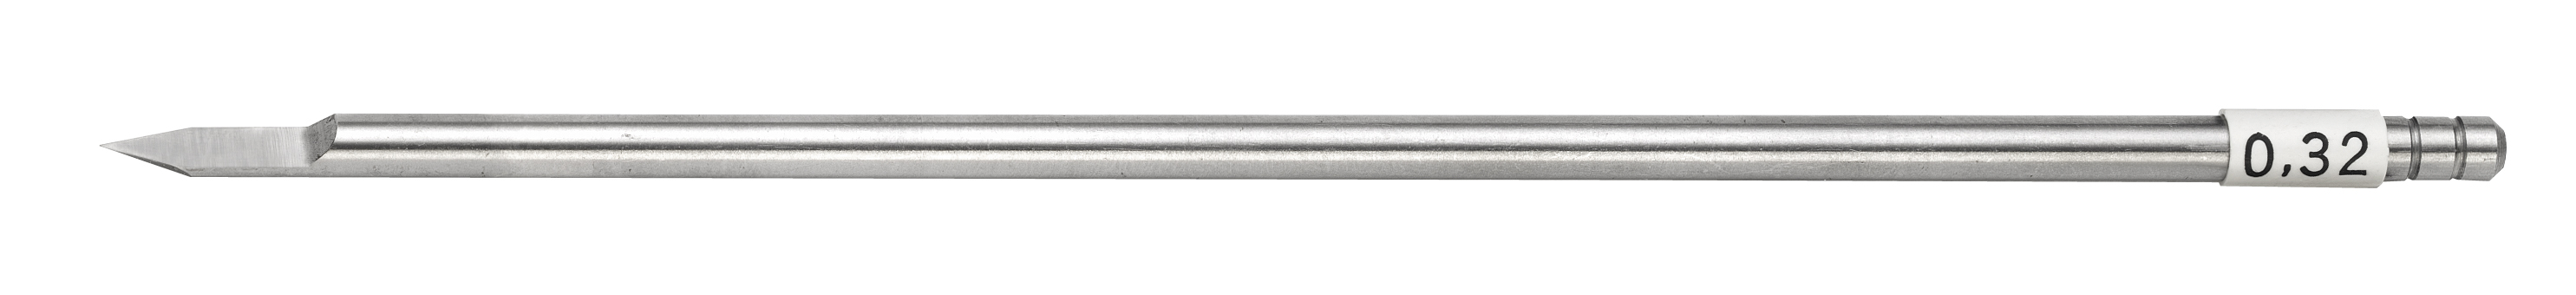 HSS-Fräser Schaft-Ø 3,17 mm Breite 0,32 mm Gravograph